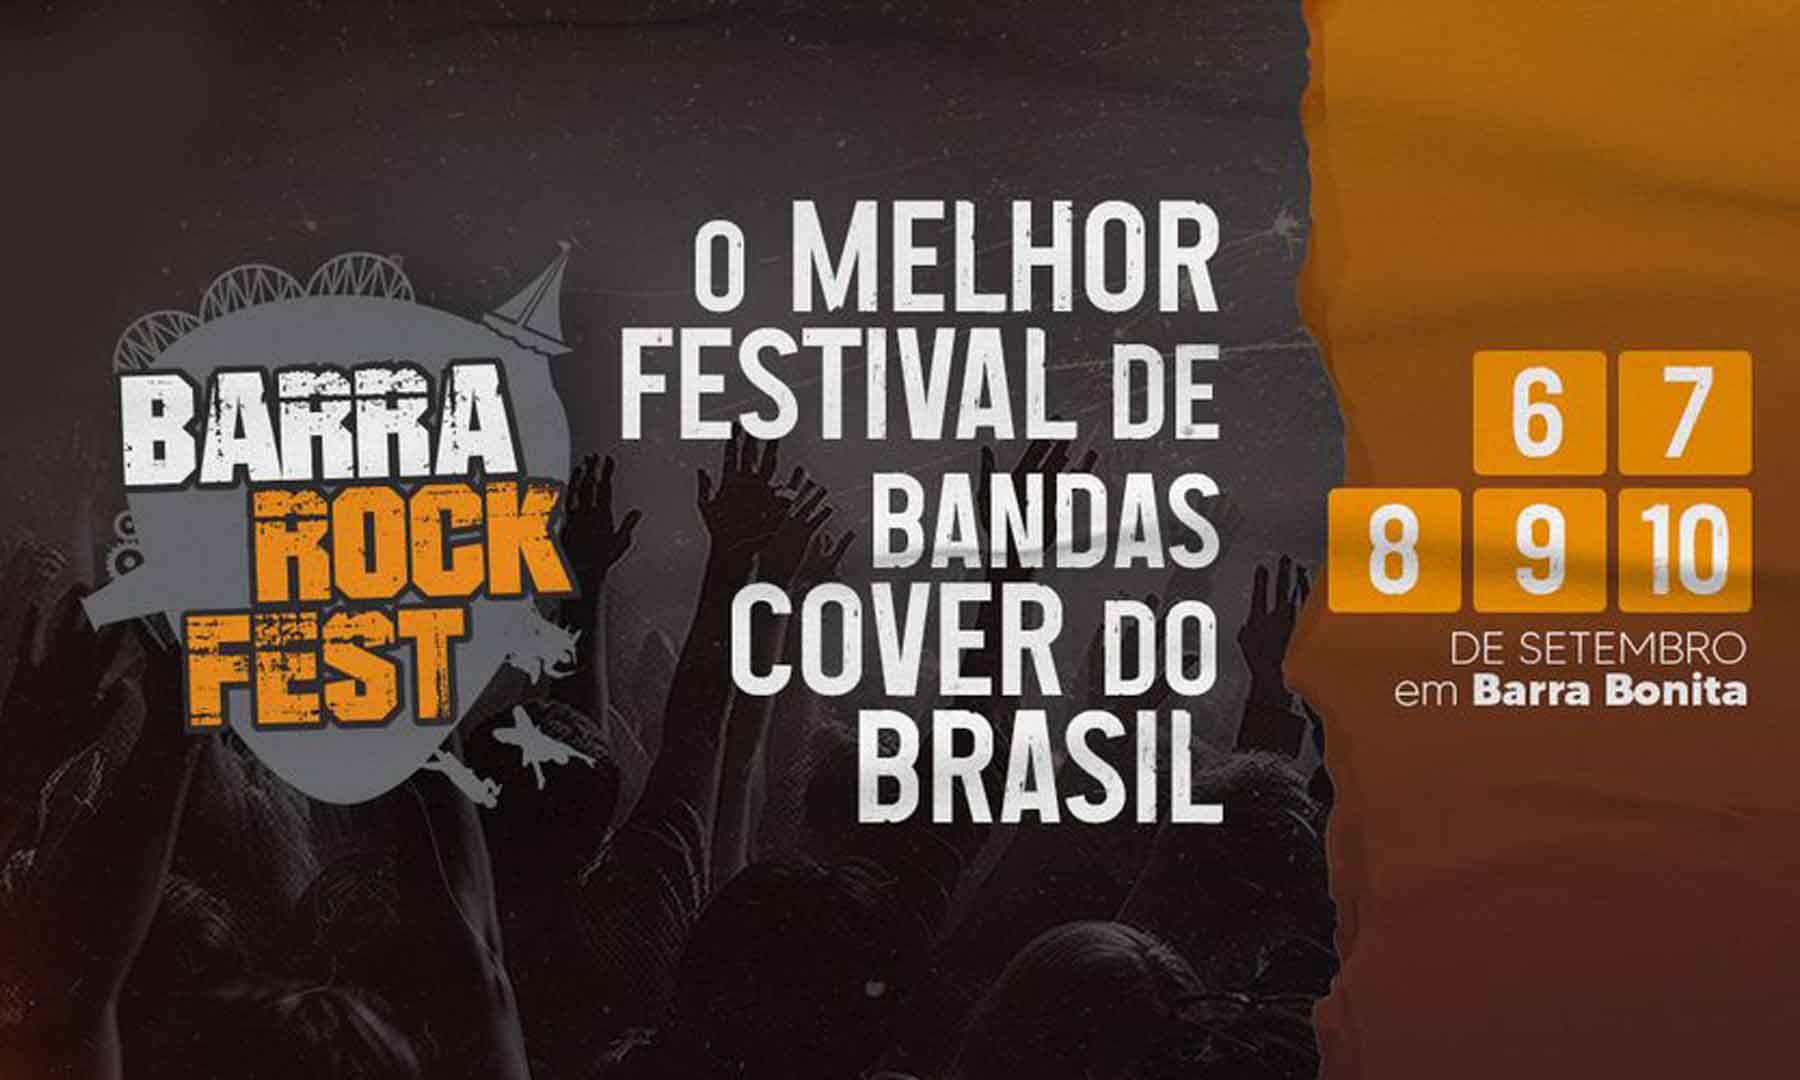 BARRA ROCK FEST: O MELHOR FESTIVAL DE BANDAS COVER DO BRASIL - CONFIRA A SUA PROGRAMAÇÃO